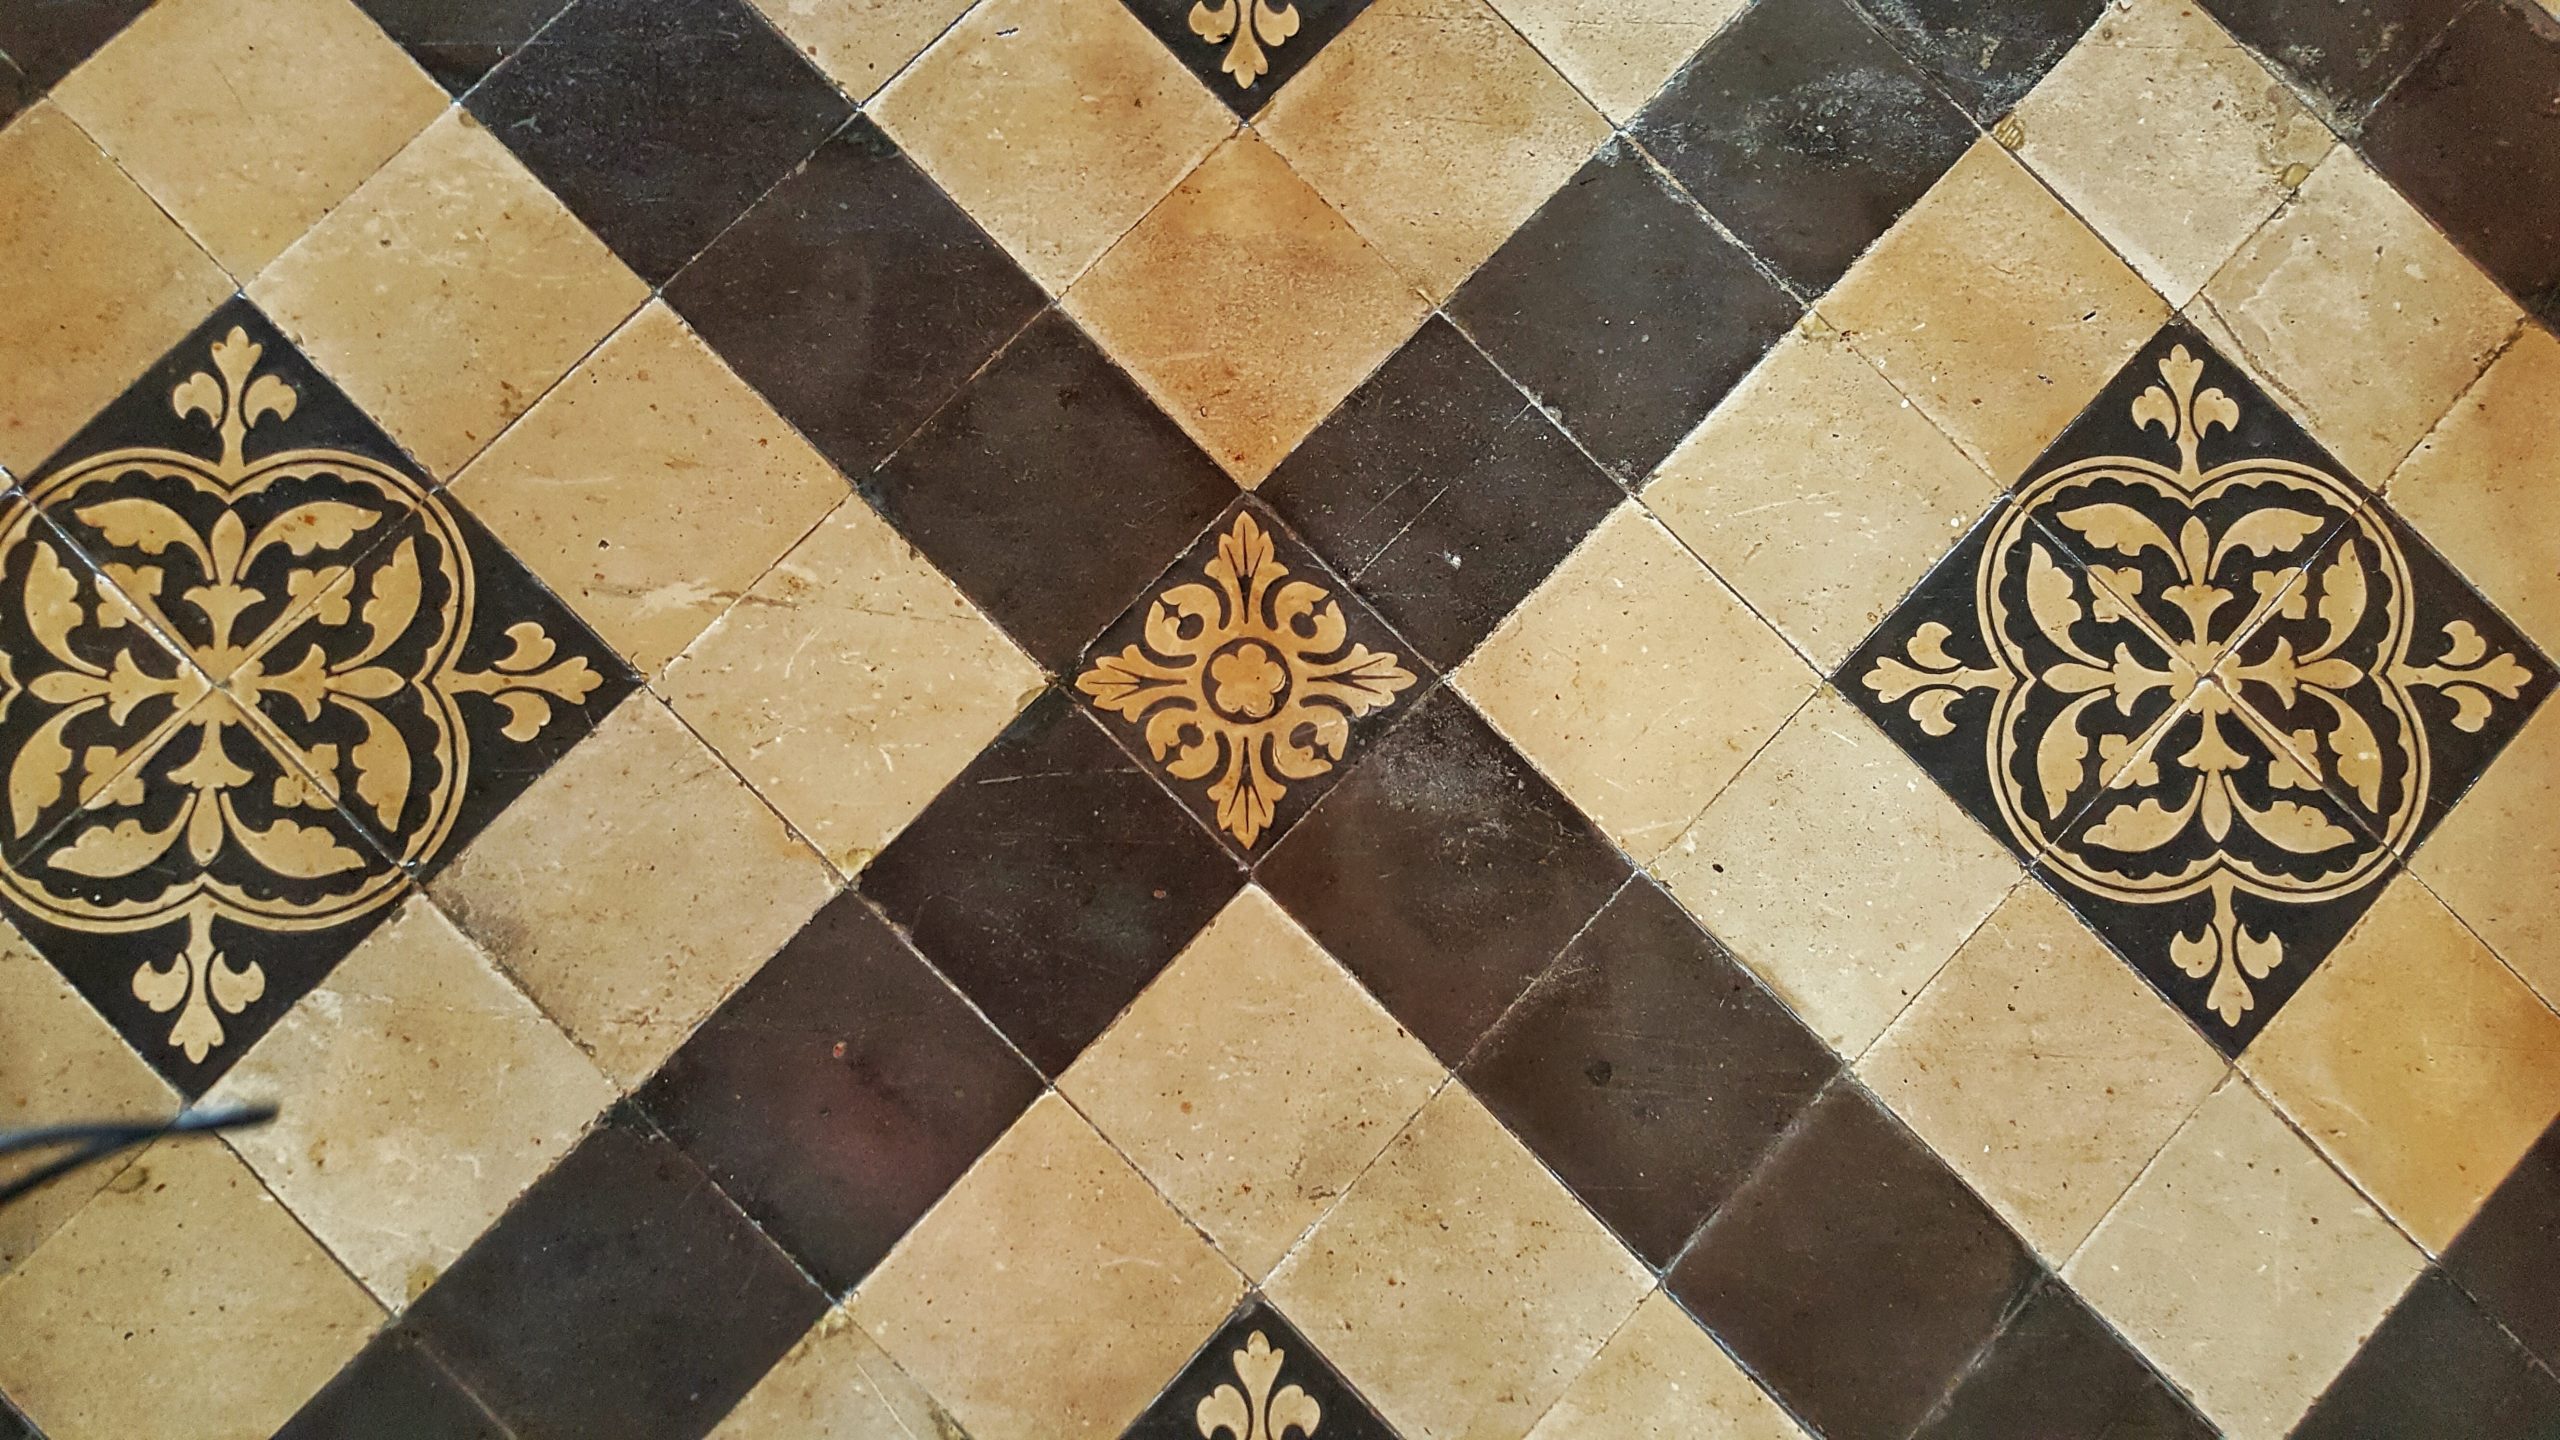 Reclaimed Patterned Encaustic Floor Tiles 3.9 m2 (42 sq ft)